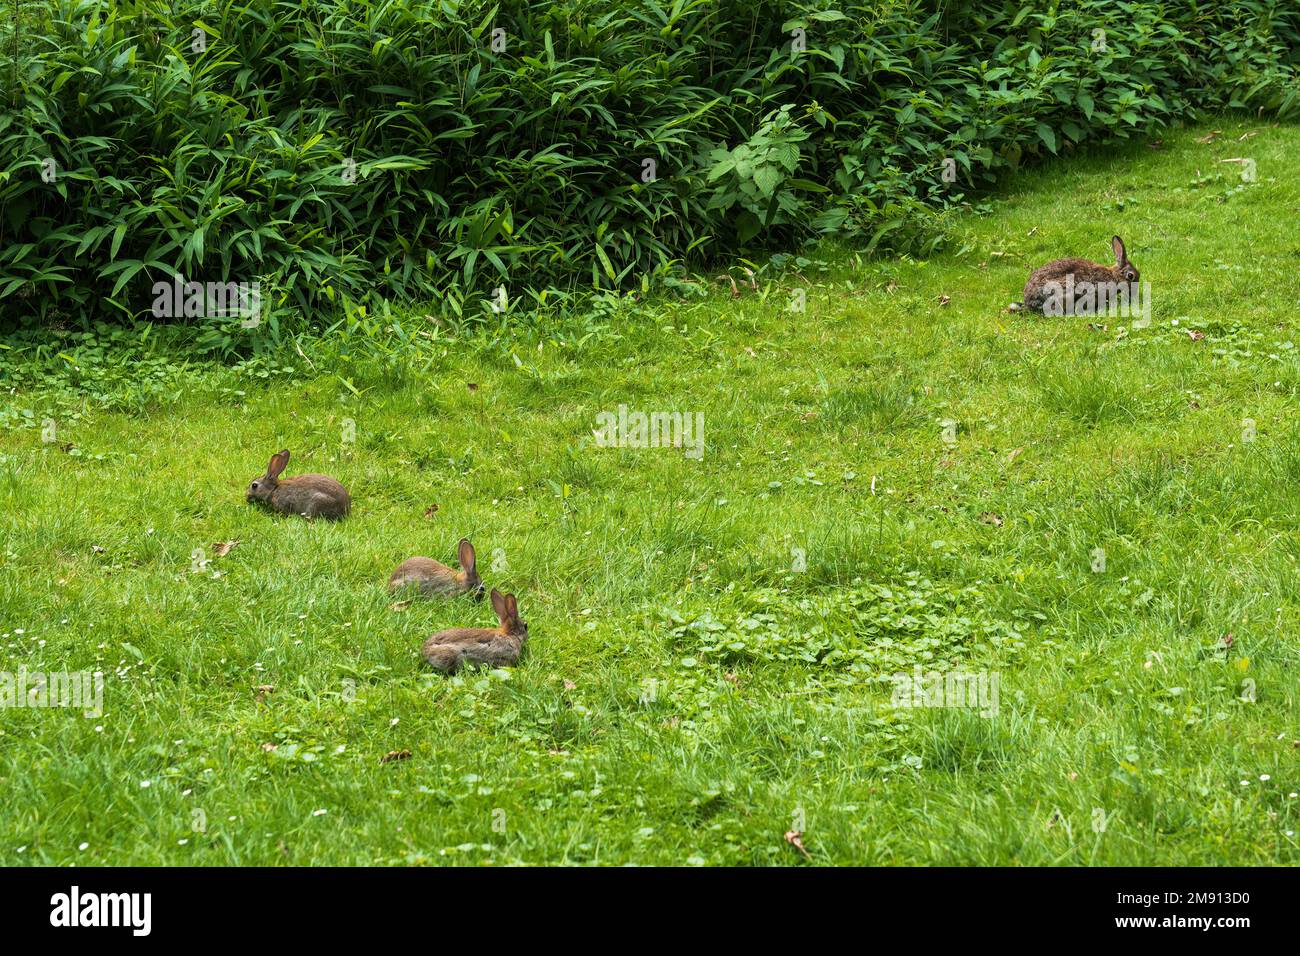 Famille de lapins sauvages dans un pré vert près de la brousse où ils se cachent, mère avec jeunes lapins juvéniles, petits mammifères de la famille des Leporidae. Banque D'Images